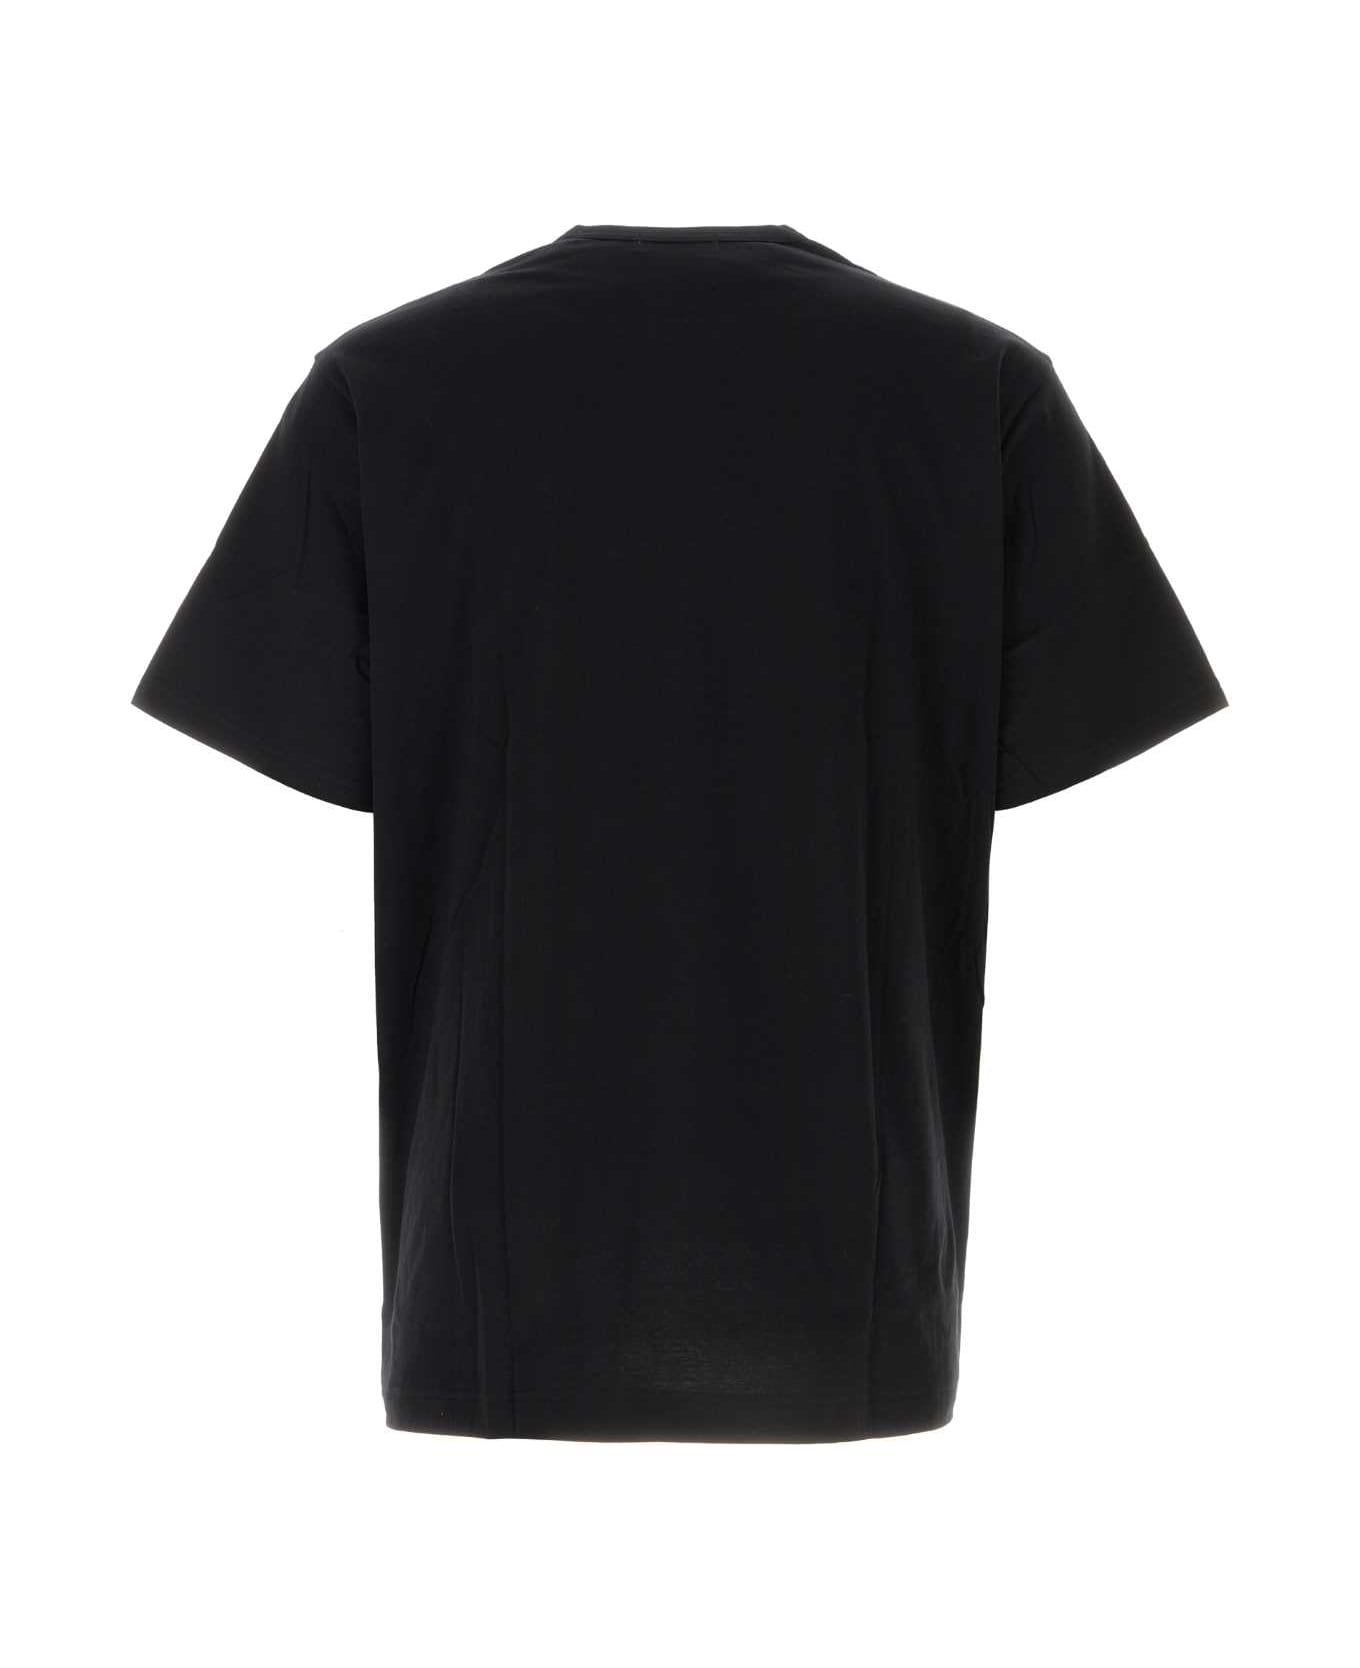 Yohji Yamamoto Black Cotton T-shirt - BLACK